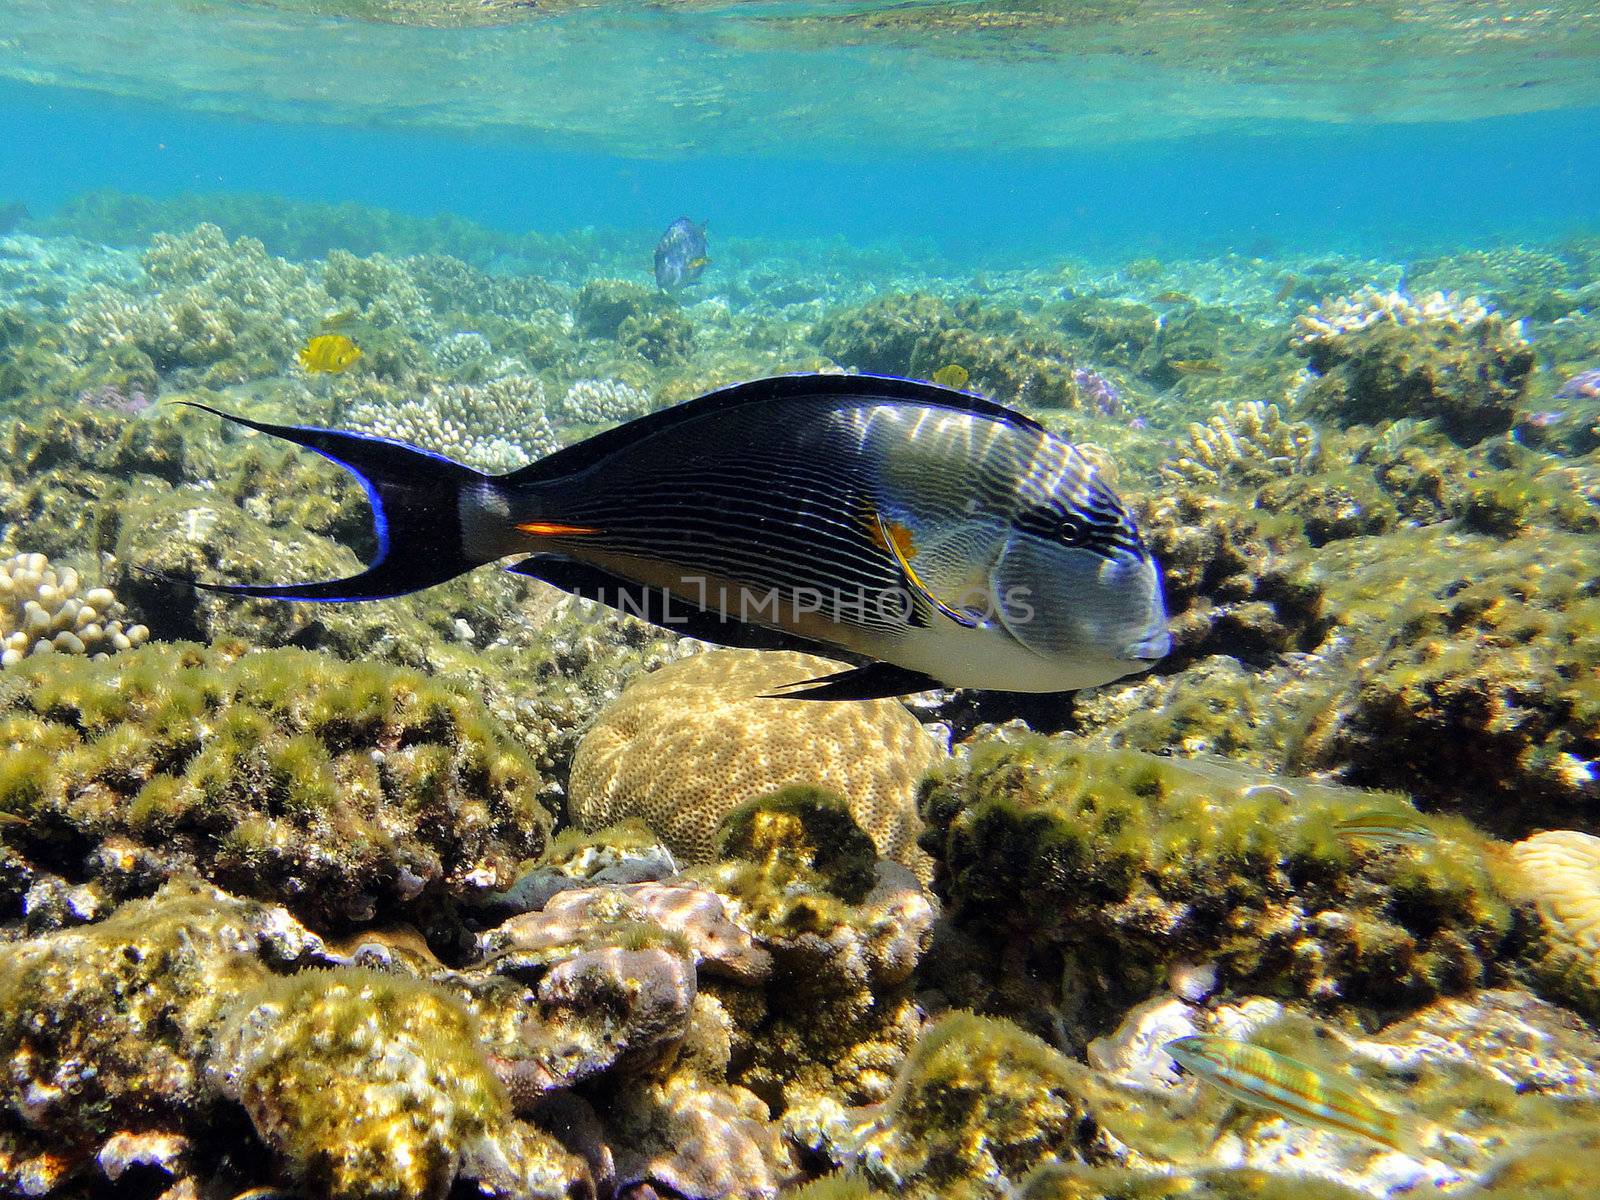 Surgeon fish, Red sea, Sharm El Sheikh, Egypt.